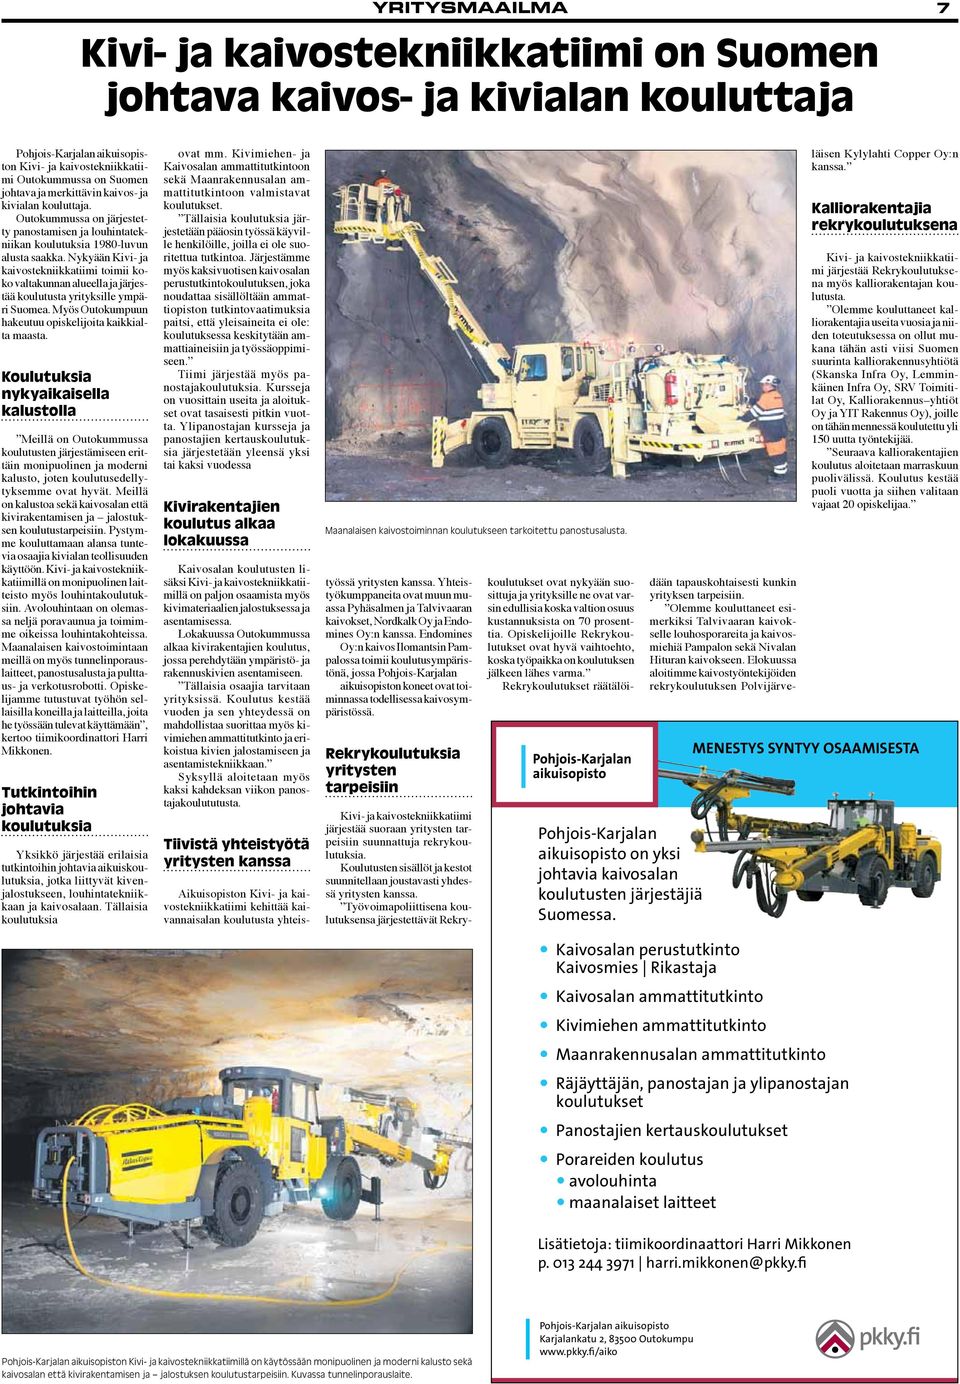 Nykyään Kivi- ja kaivostekniikkatiimi toimii koko valtakunnan alueella ja järjestää koulutusta yrityksille ympäri Suomea. Myös Outokumpuun hakeutuu opiskelijoita kaikkialta maasta.